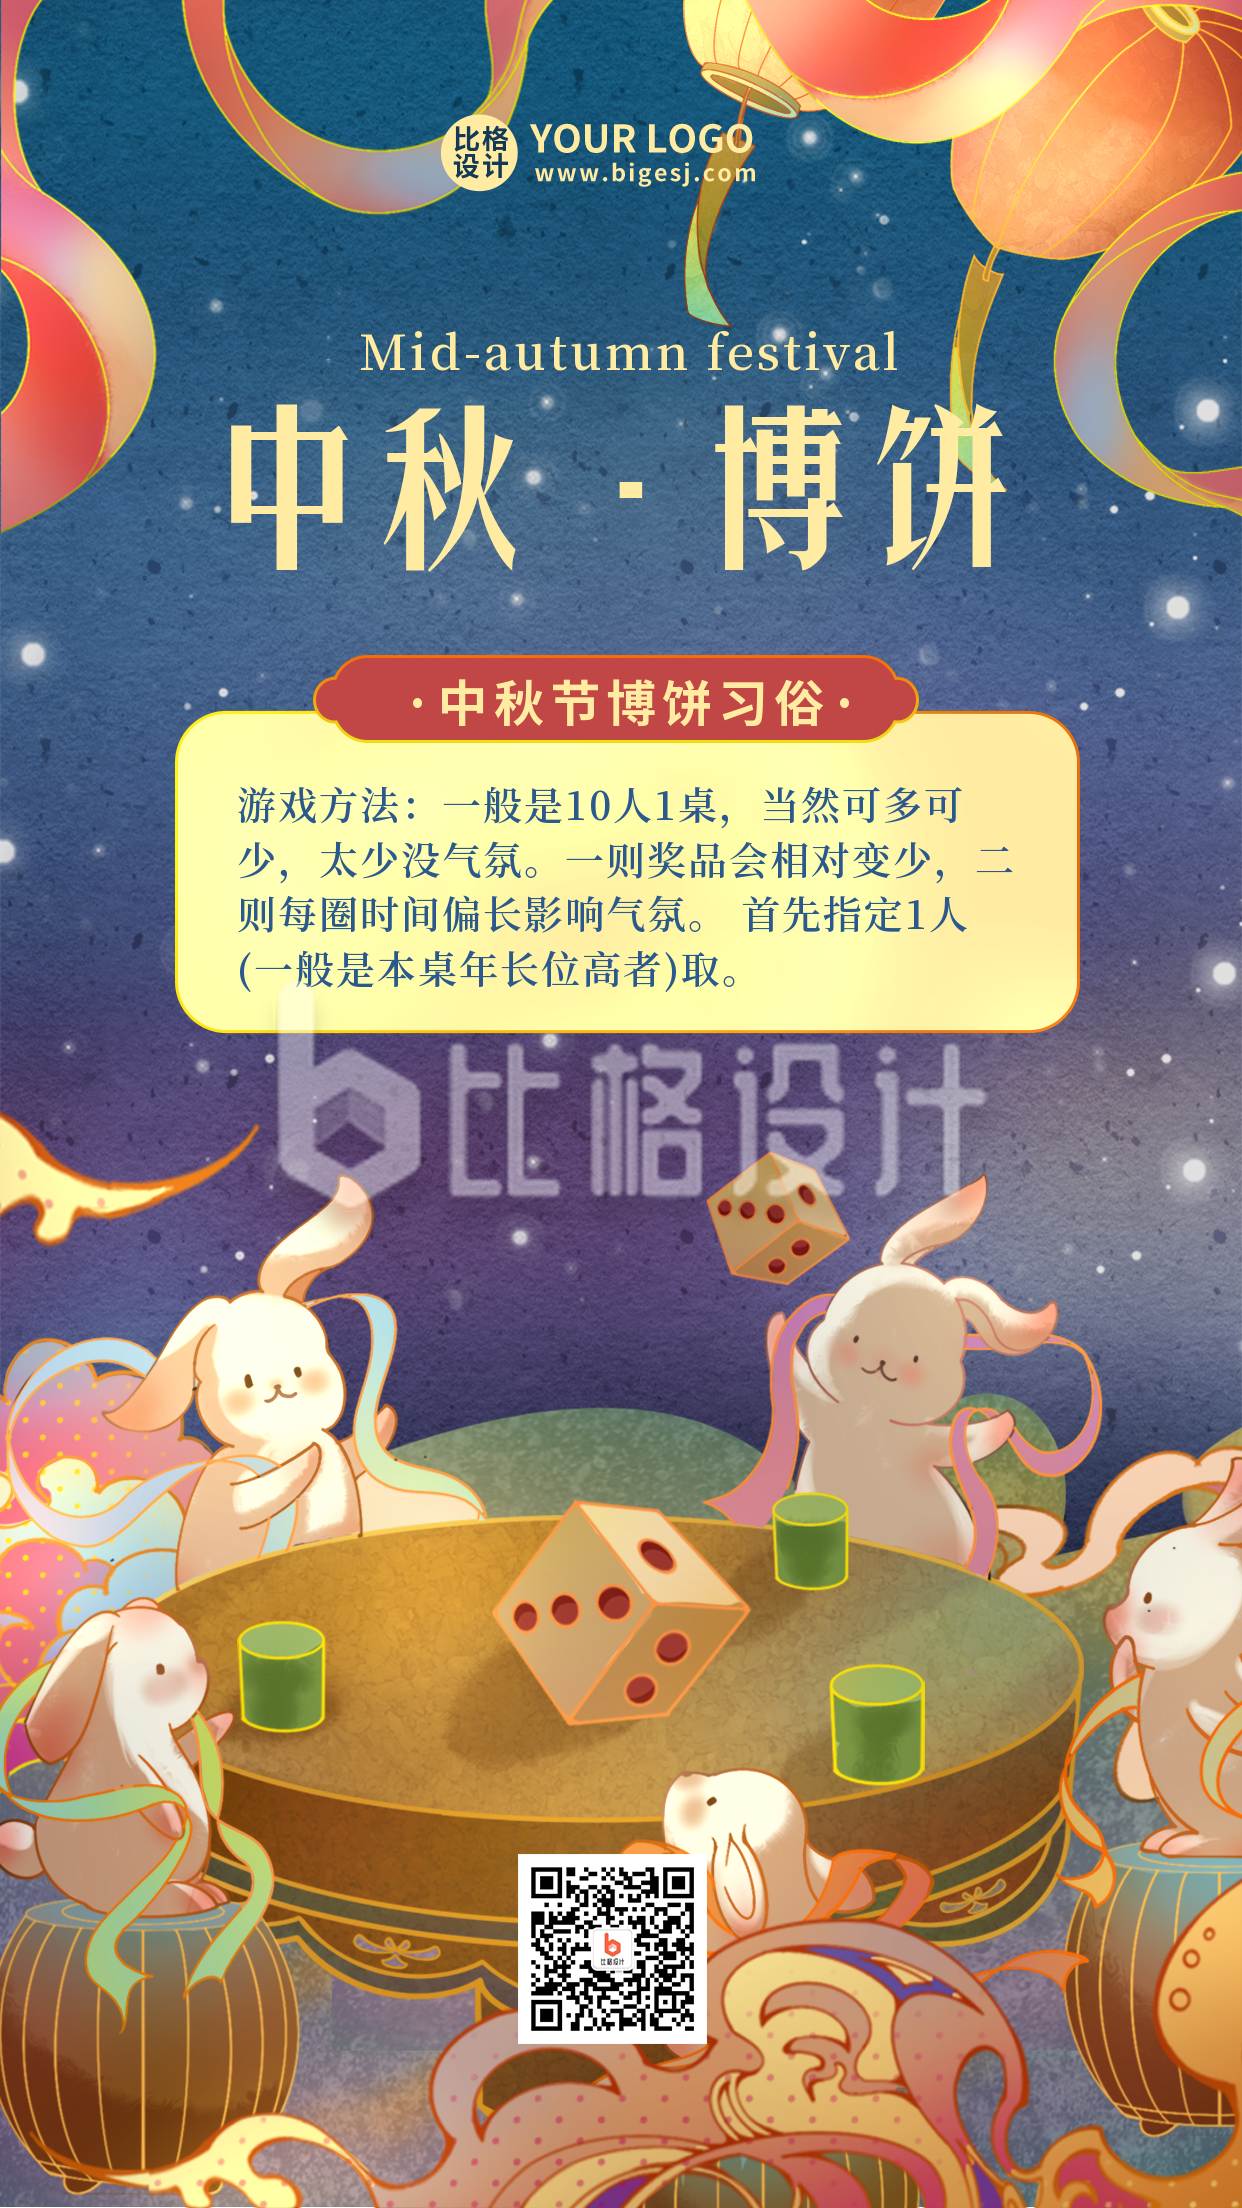 中秋节博饼游戏趣味宣传手机海报